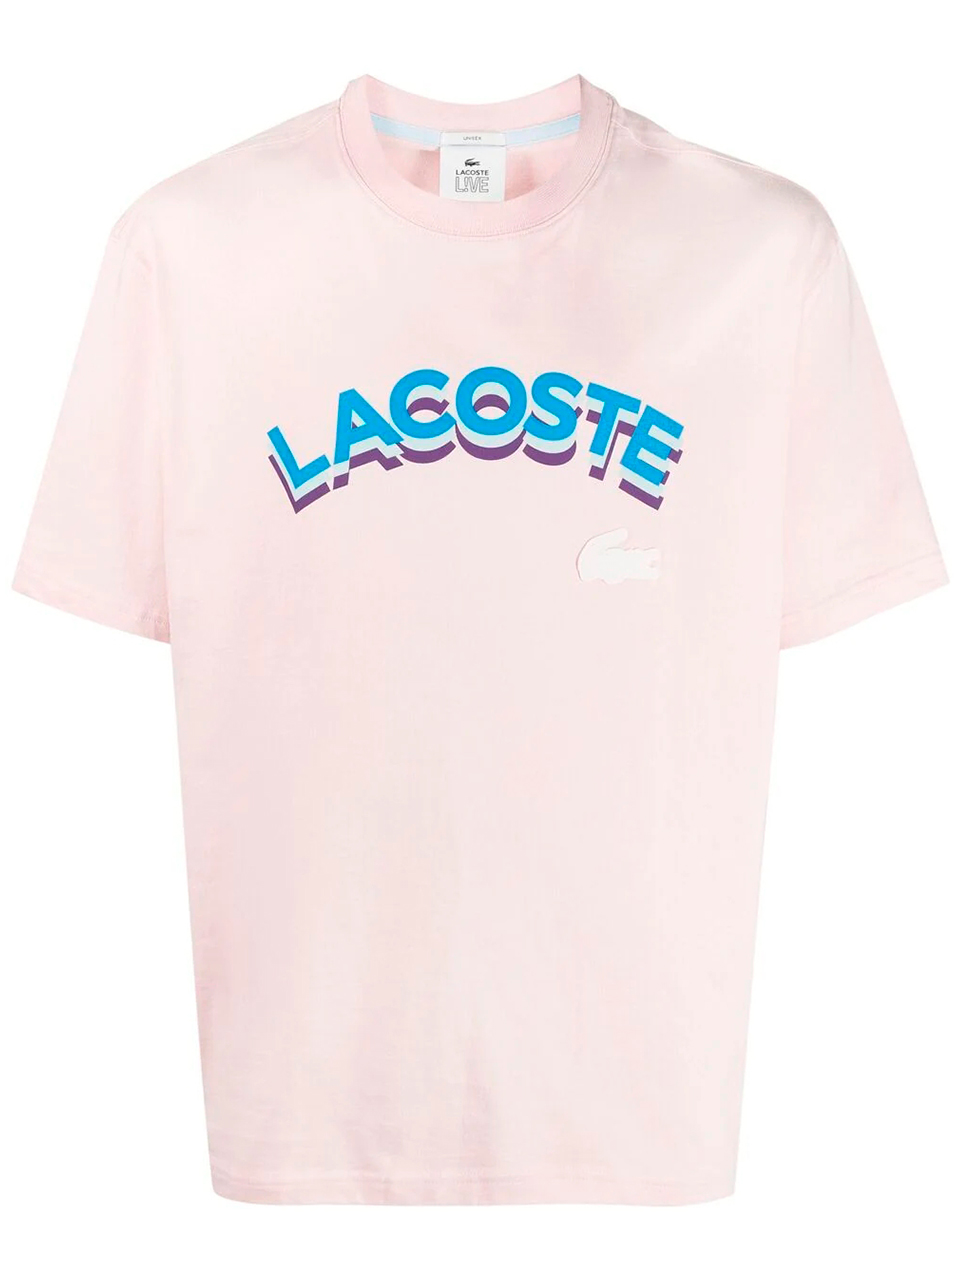 Imagem de: Camiseta Lacoste Rosa com Estampa